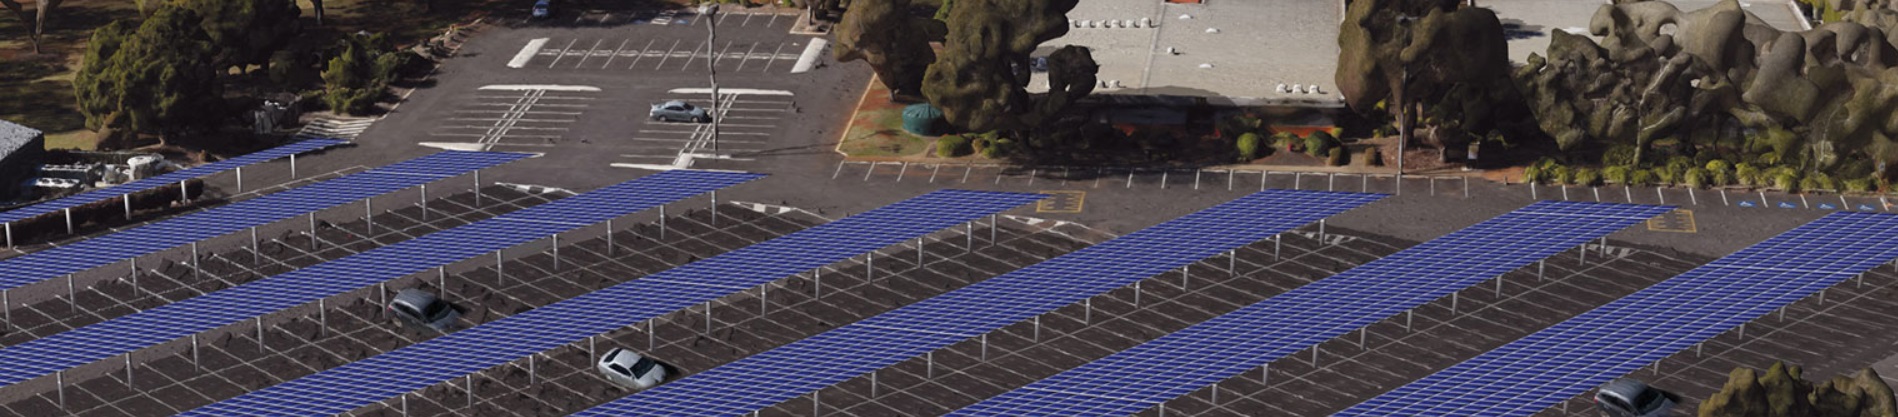 Car park solar power system